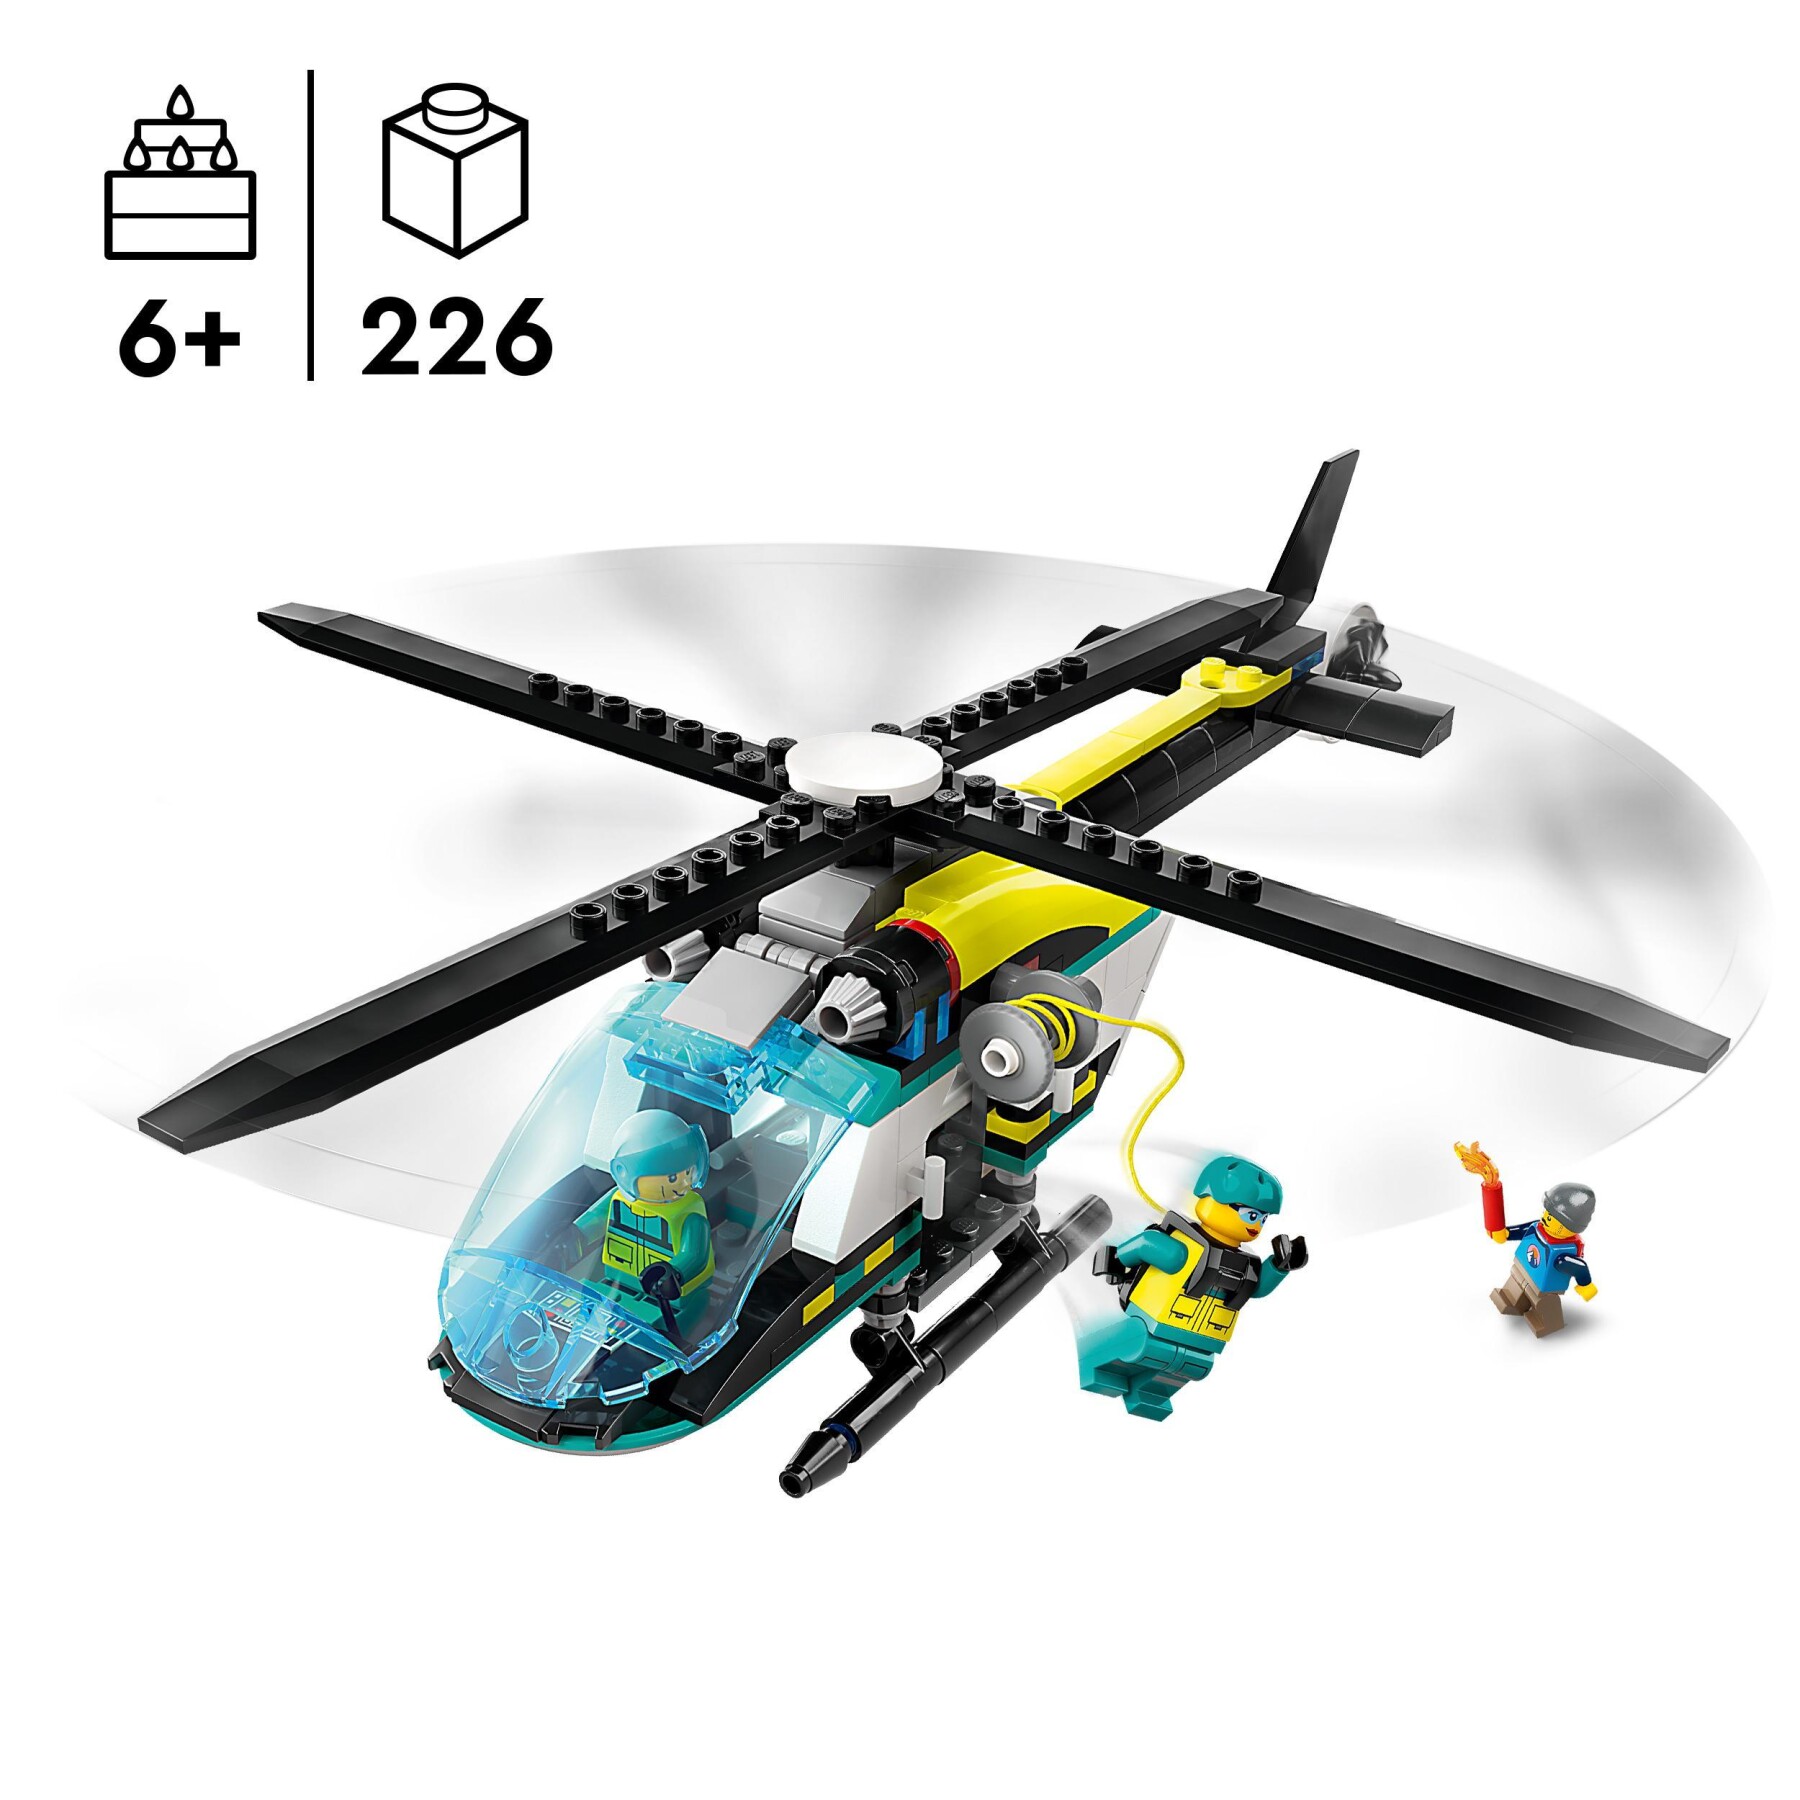 Lego city 60405 elicottero di soccorso di emergenza, set con veicolo giocattolo con rotori e verricello, giochi per bambini 6+ - LEGO CITY